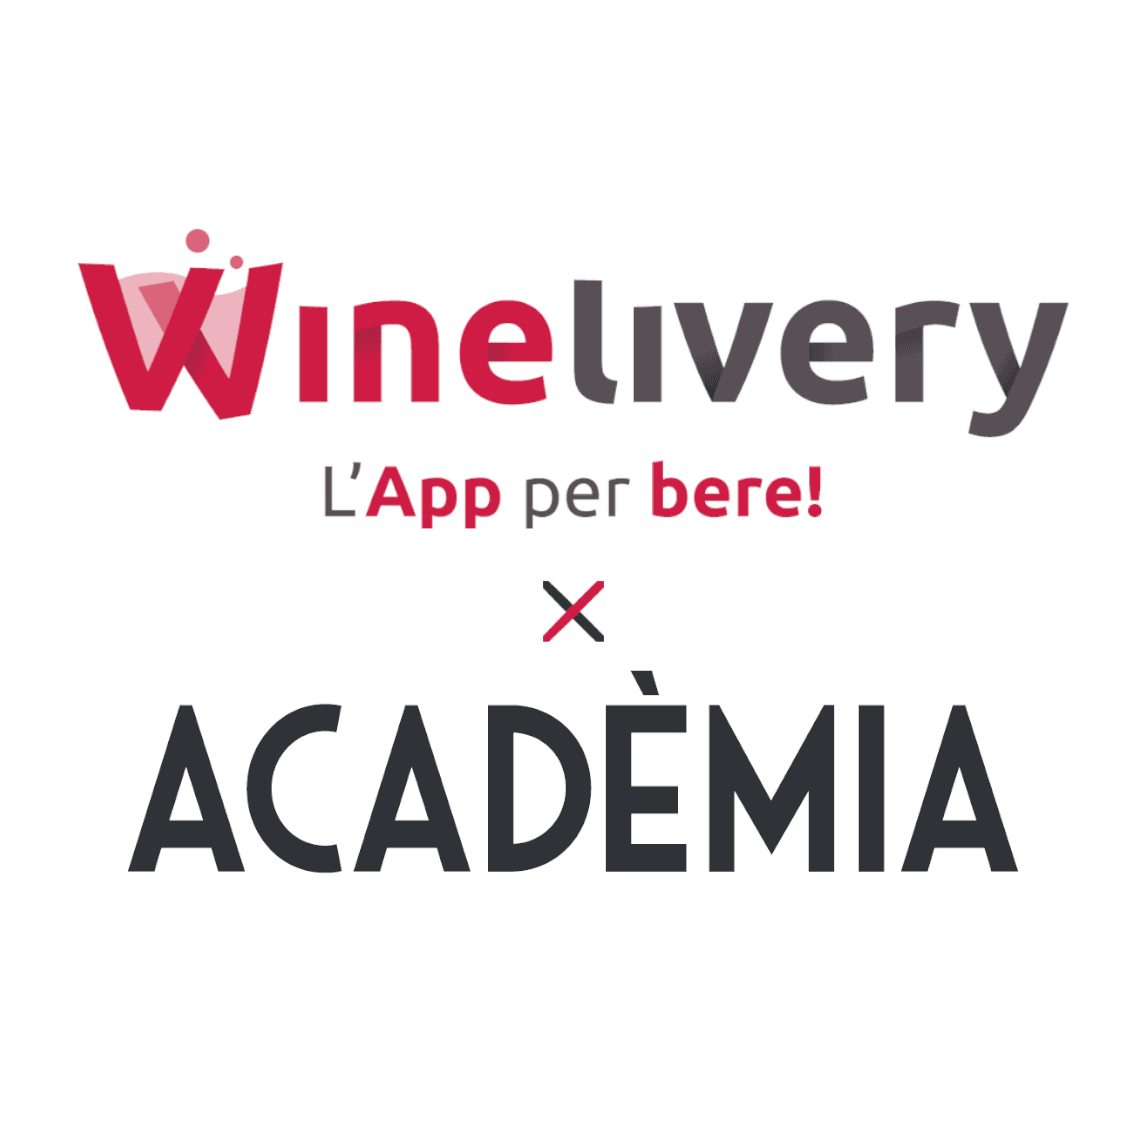 Winelivery & Academia